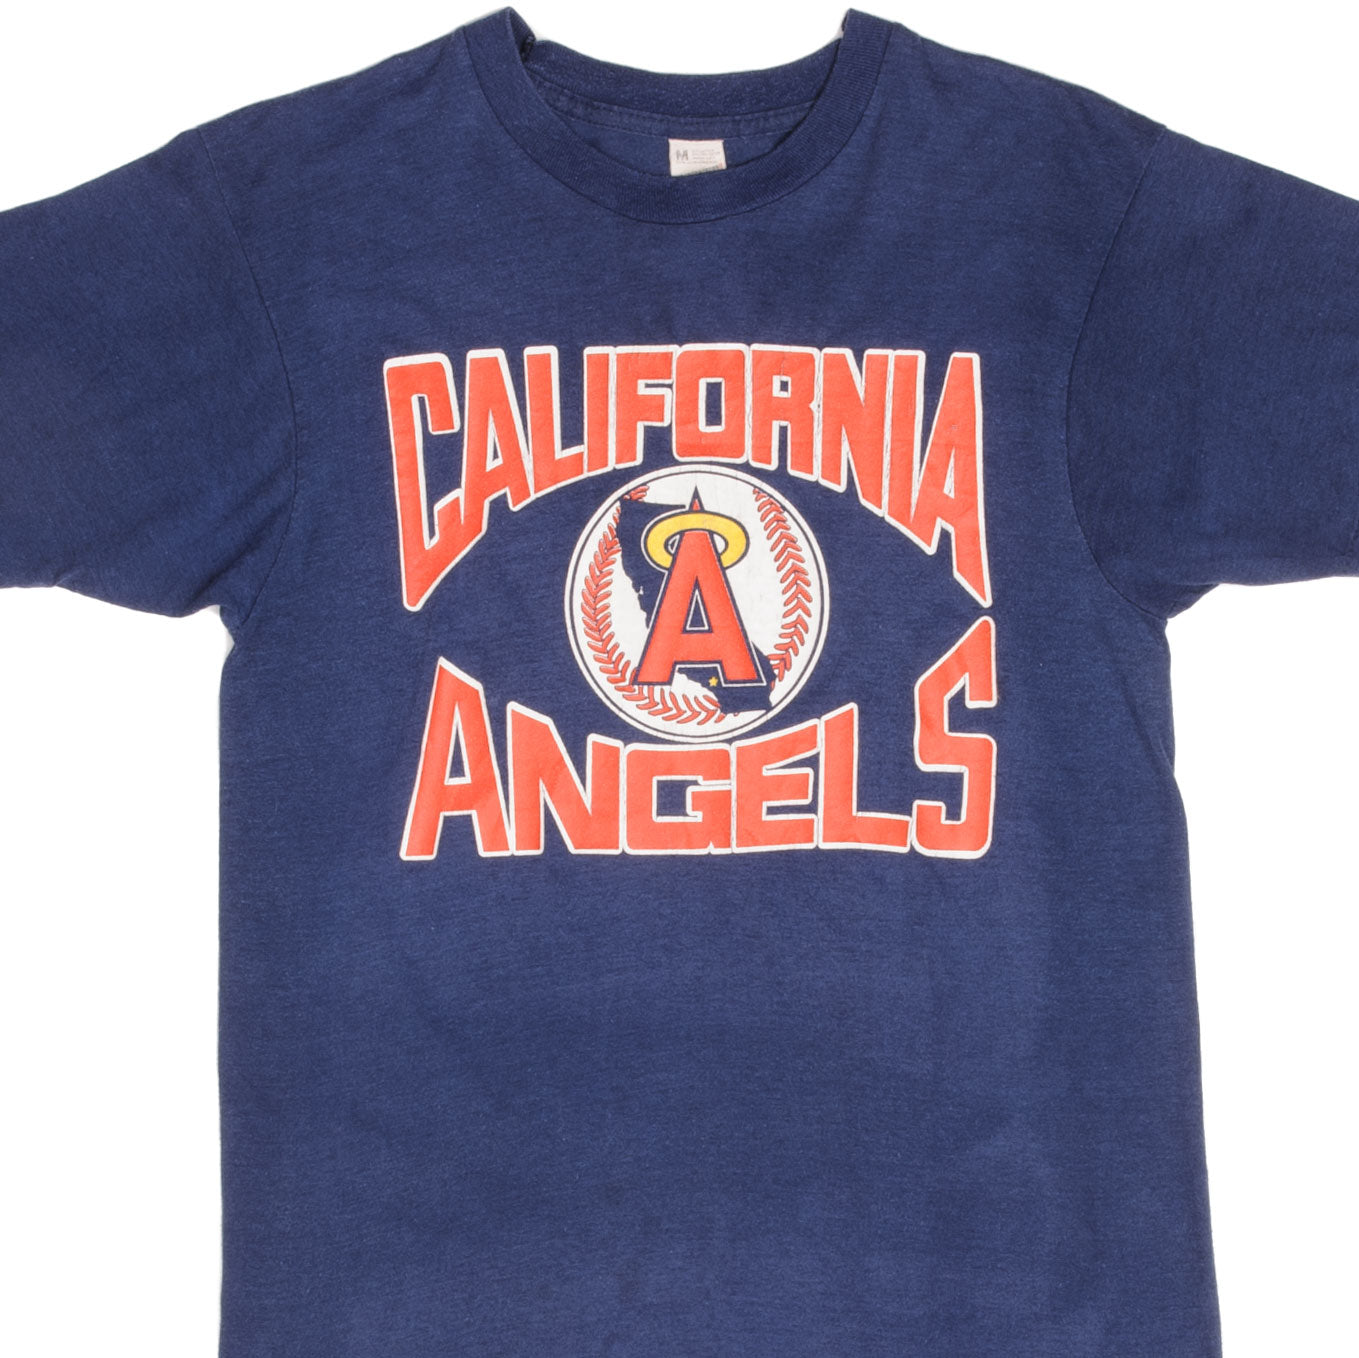 Los Angeles Angels T-Shirt, Angels Shirts, Angels Baseball Shirts, Tees